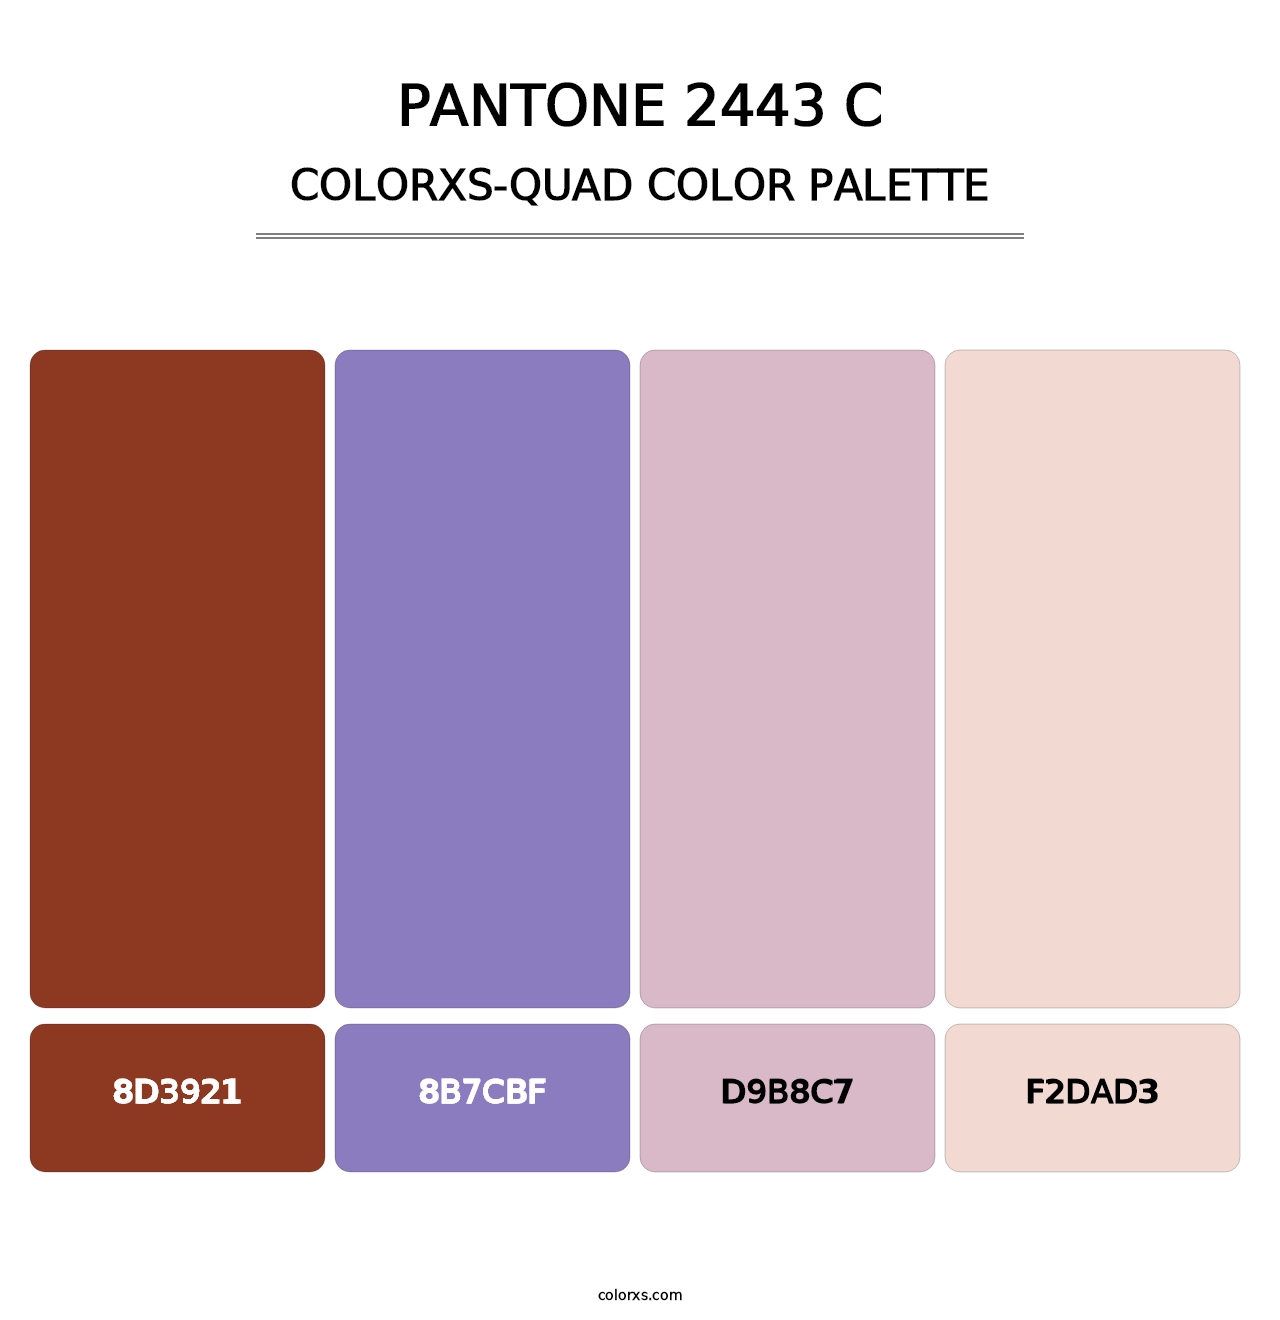 PANTONE 2443 C - Colorxs Quad Palette